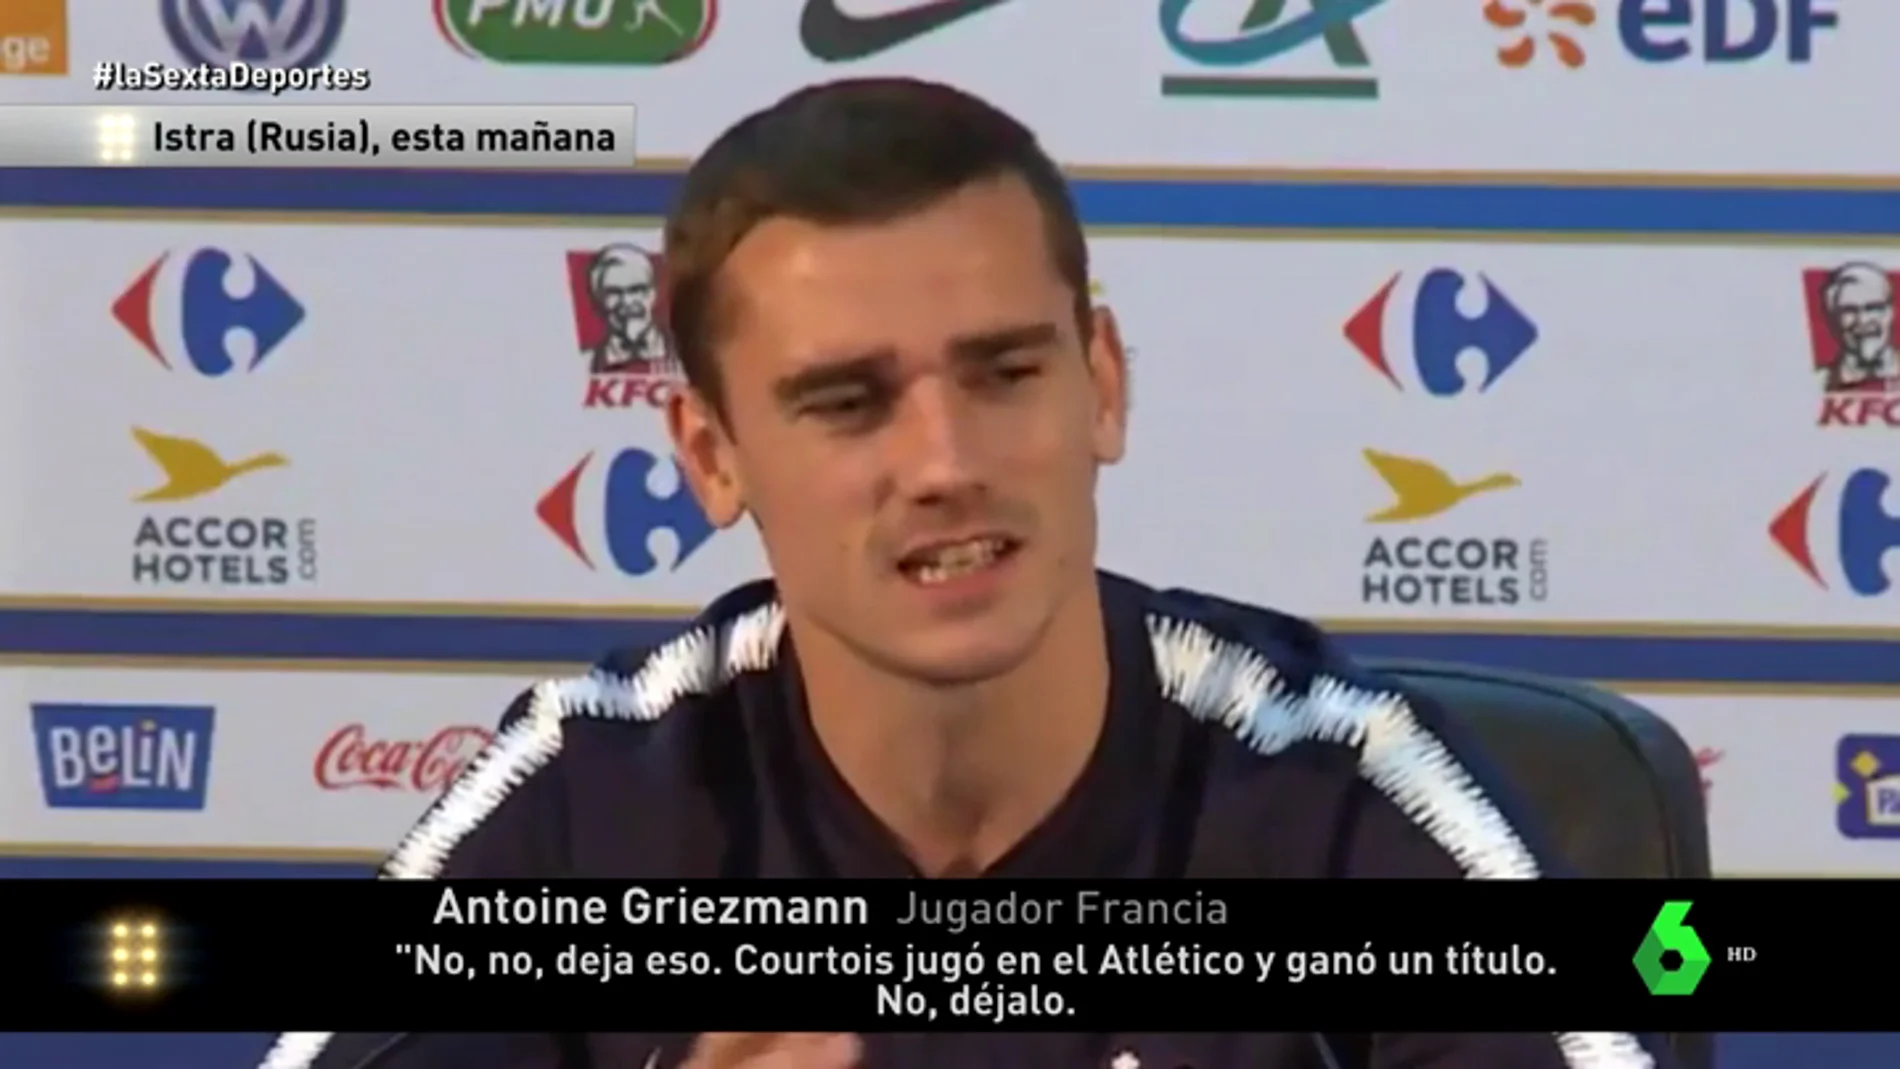 El palo de Griezmann a Courtois en rueda de prensa: "Ha jugado en el Atlético de Madrid, juega en el Chelsea, creo que juega como el Barça"